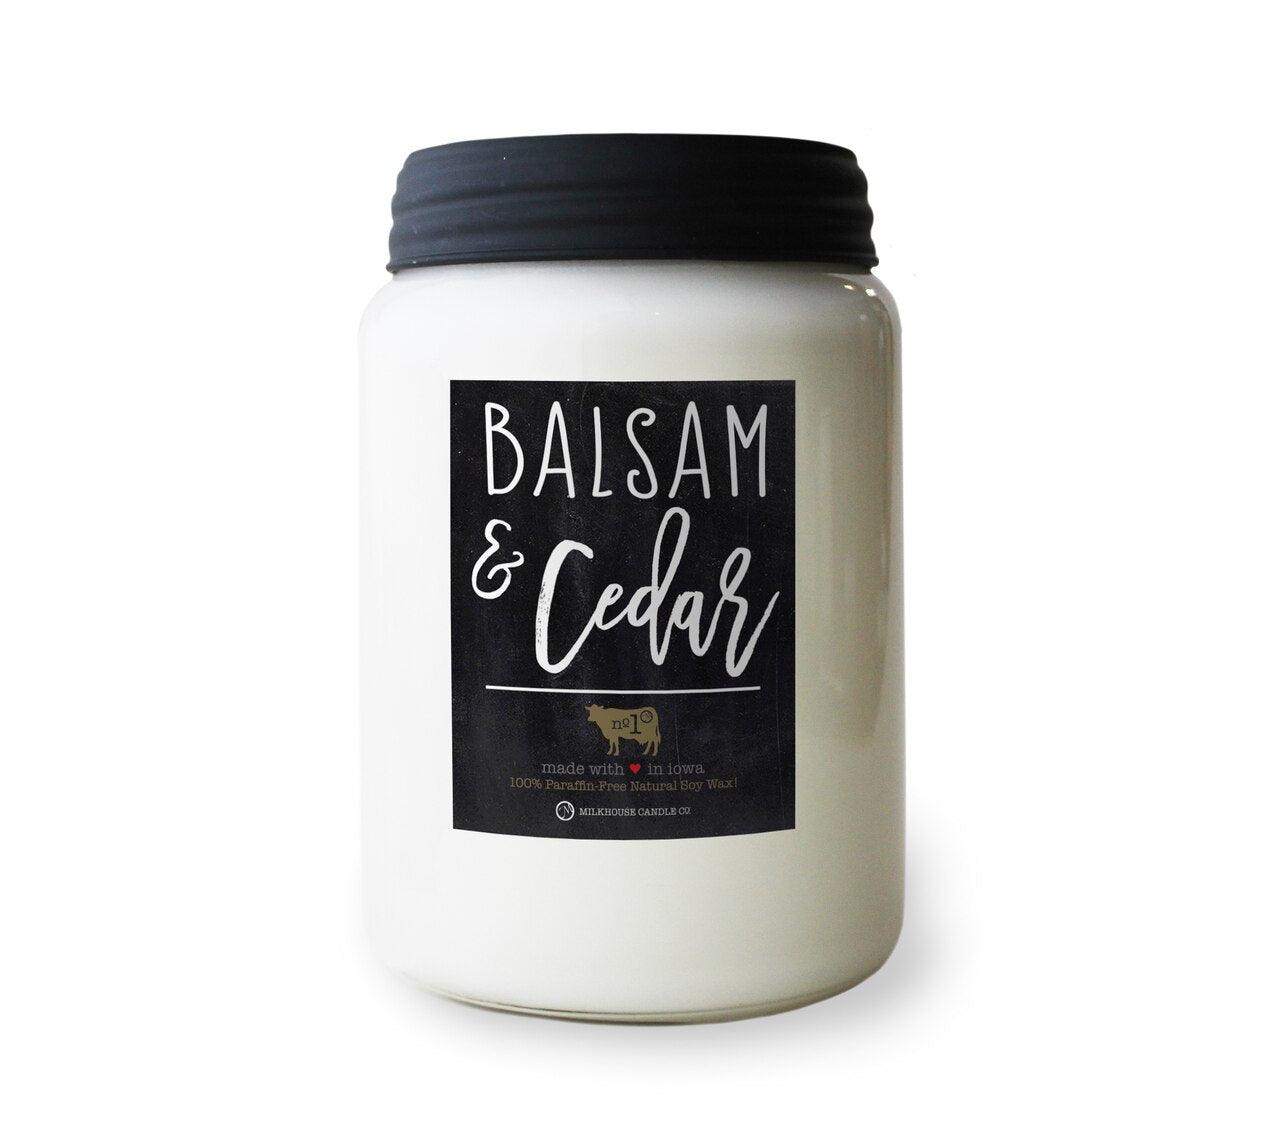 Balsam & Cedar 26oz Farmhouse Milkhouse Candle